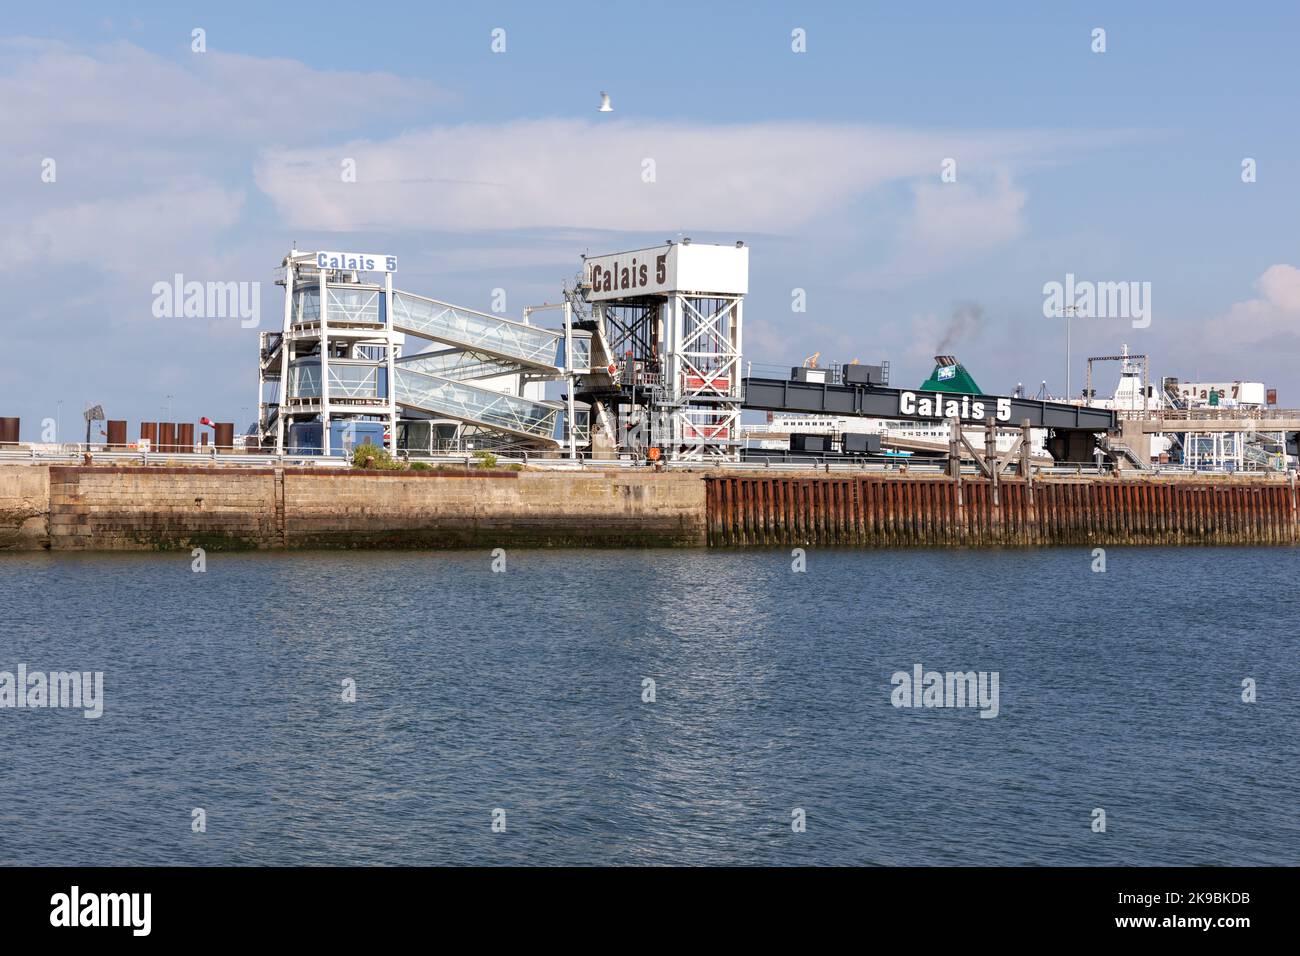 Port Boulogne Calais, port de commerce, plaisance, et Ferry